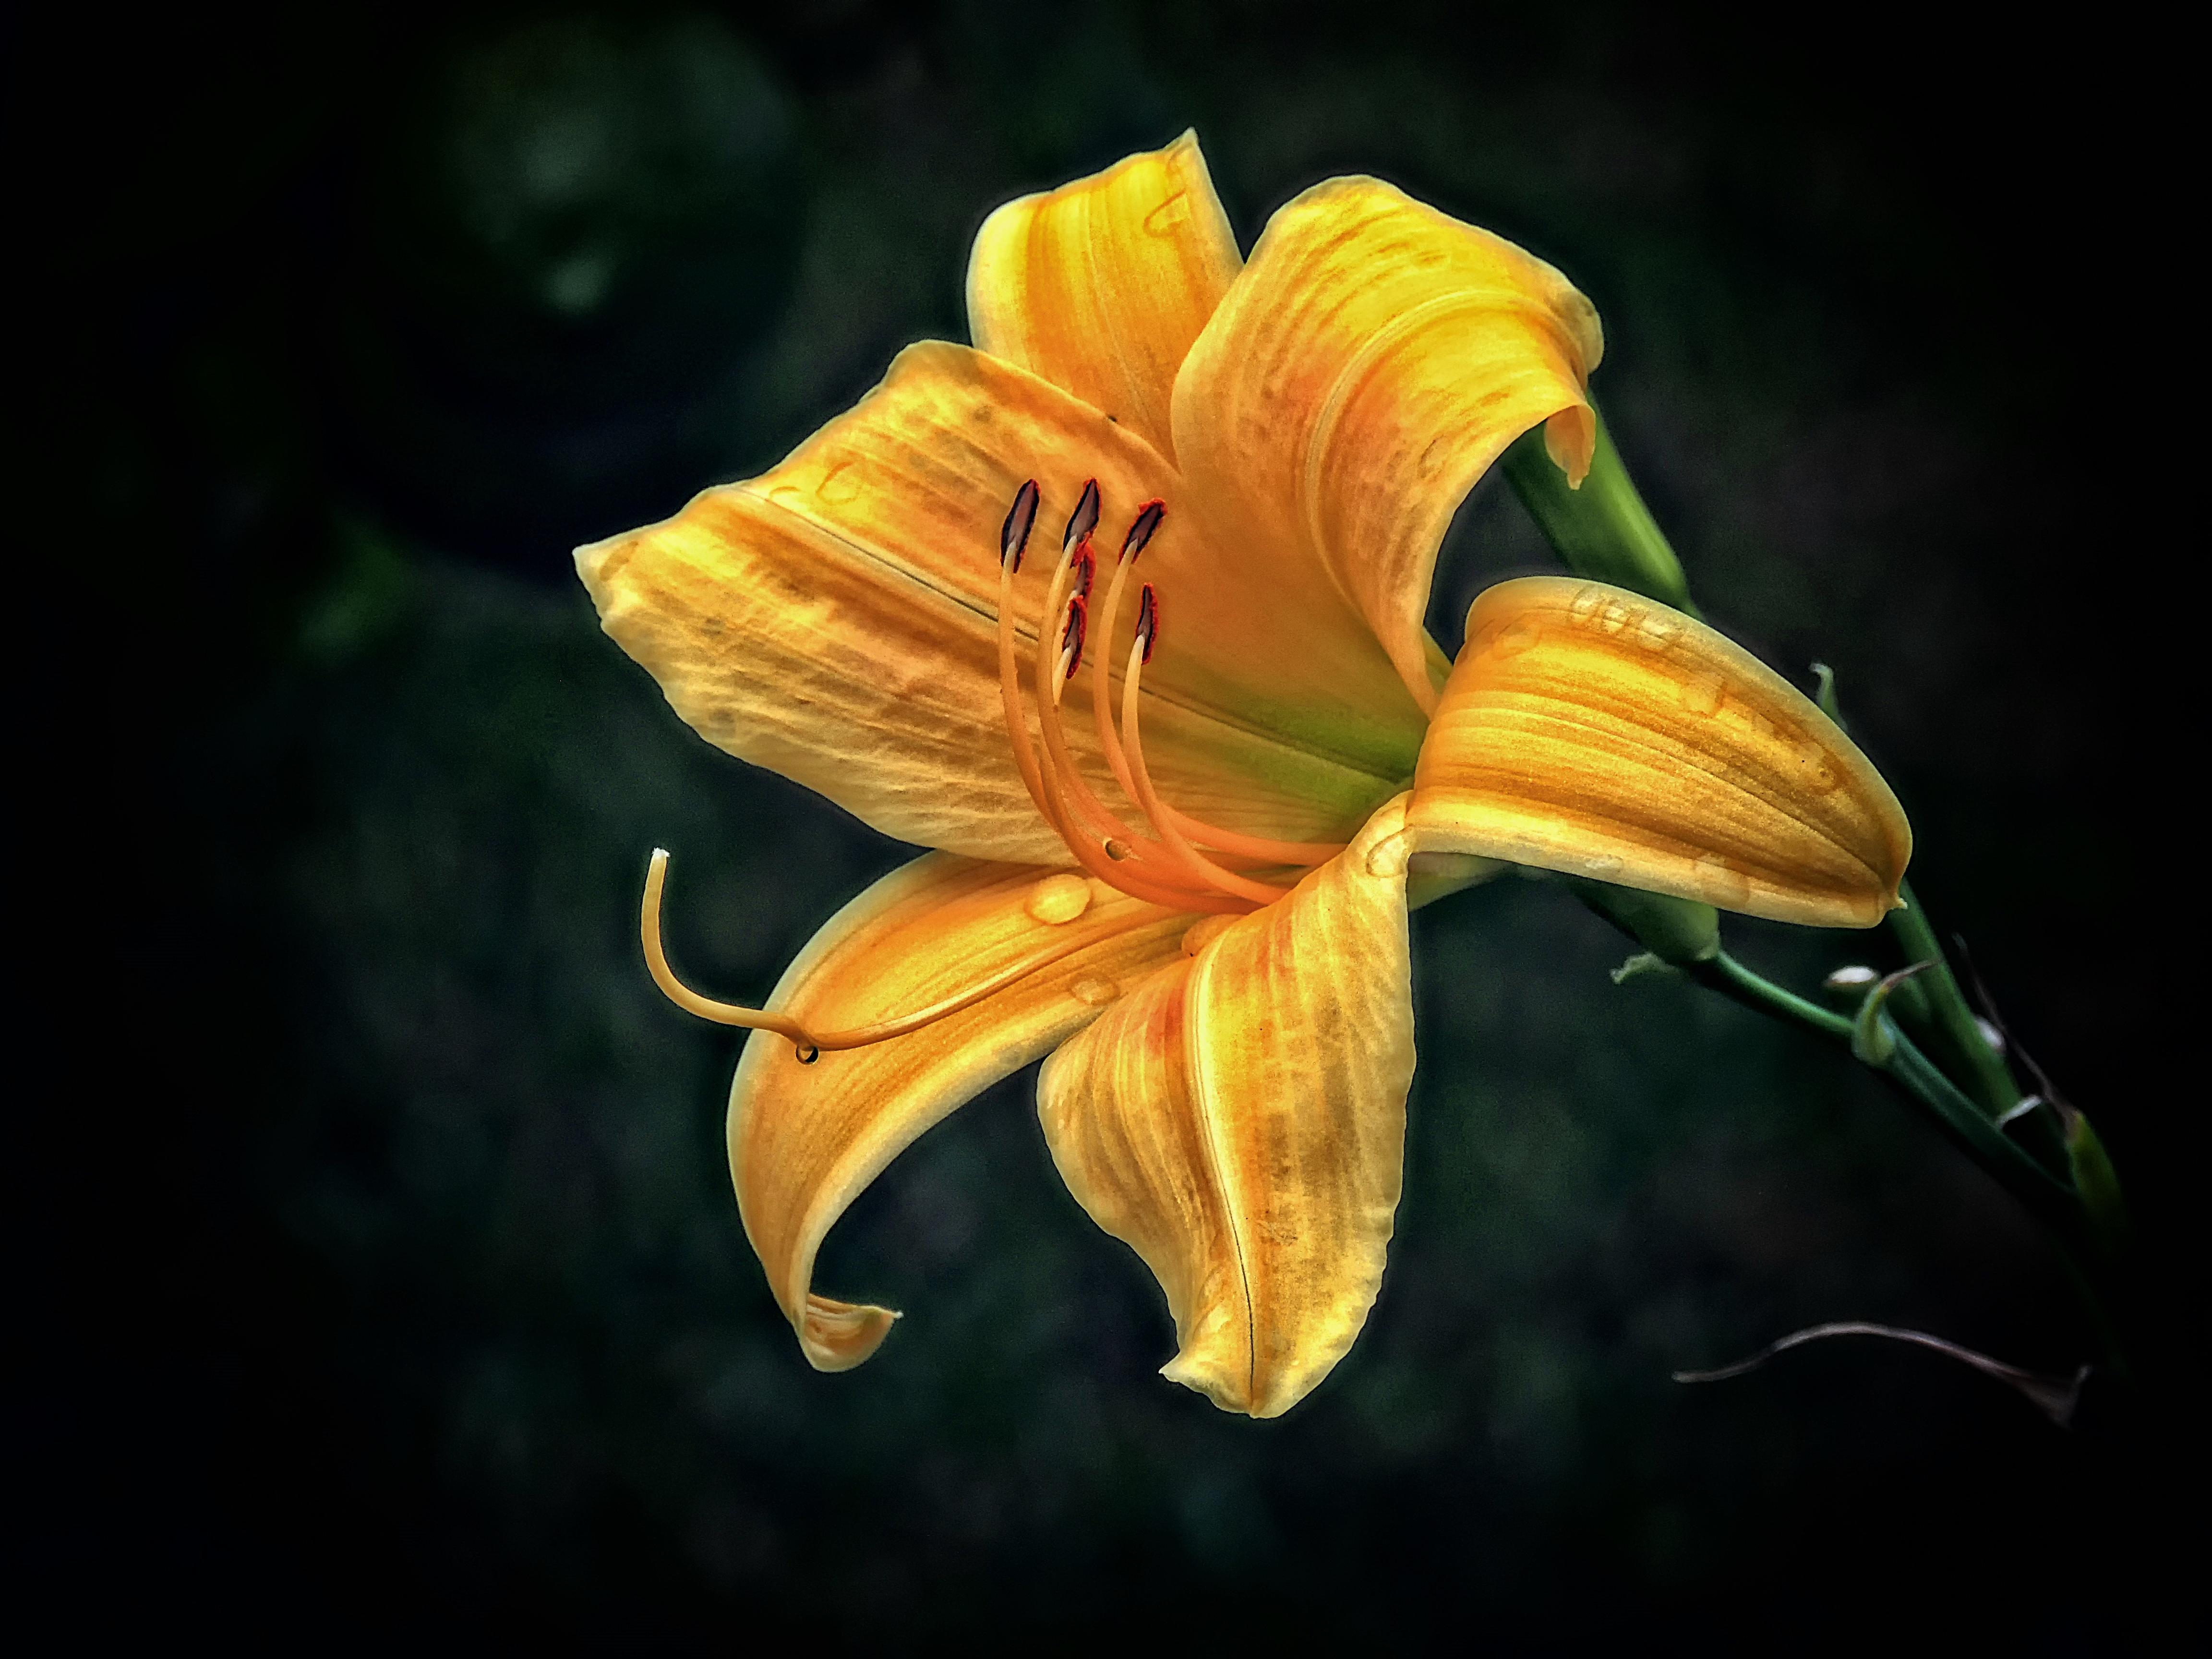 Фото лилия желтый цветок одинокий цветок - бесплатные картинки на Fonwall